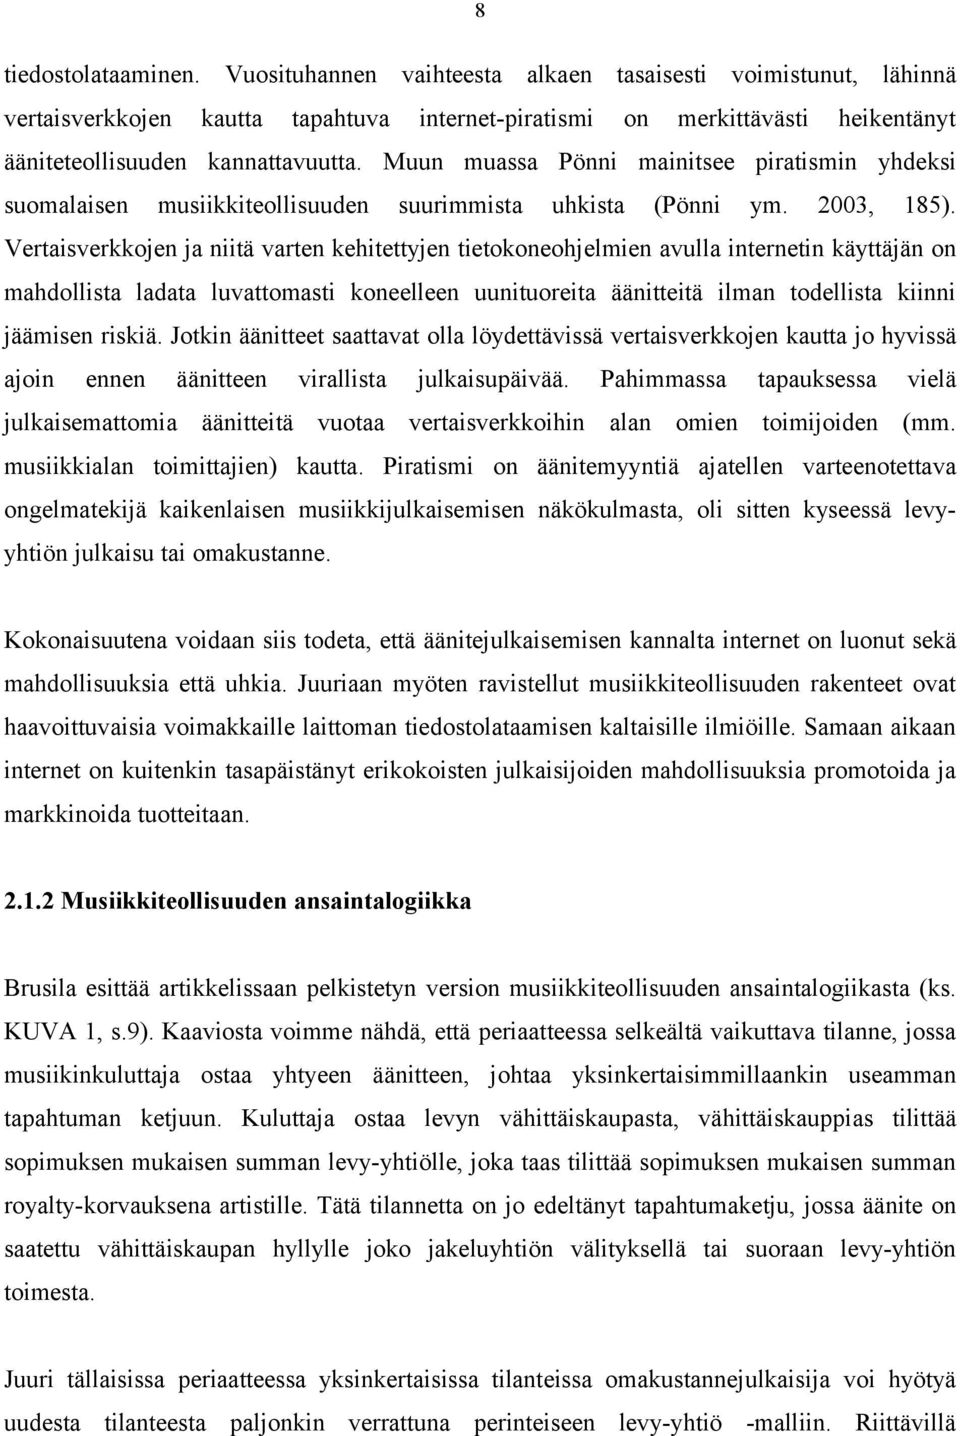 Muun muassa Pönni mainitsee piratismin yhdeksi suomalaisen musiikkiteollisuuden suurimmista uhkista (Pönni ym. 2003, 185).